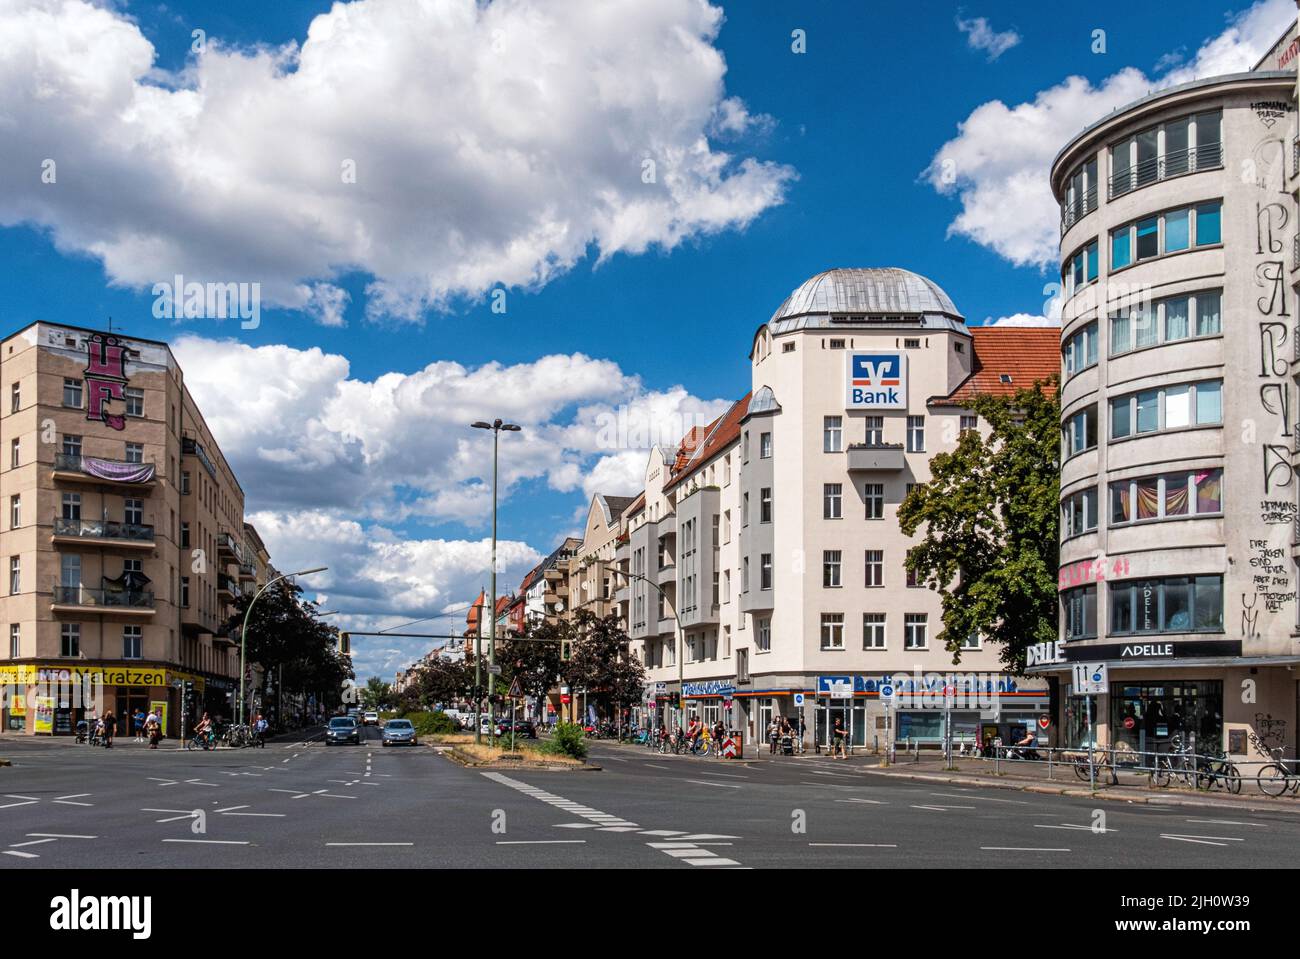 Sonnenallee, Neukölln, Berlin - Straßenansicht von Wohn- und Geschäftsgebäuden Stockfoto